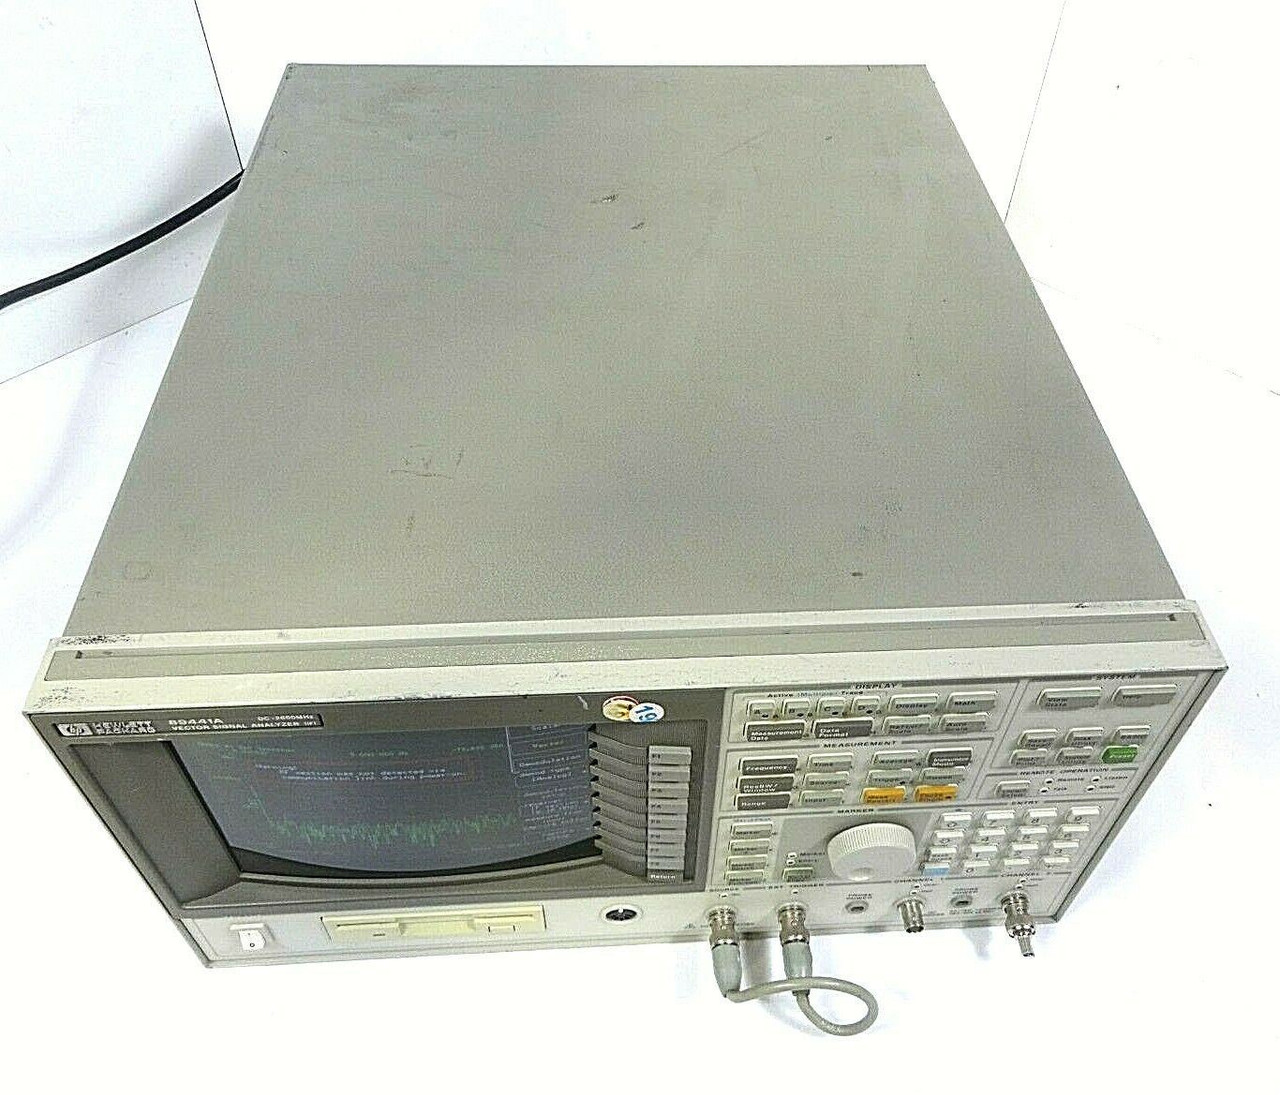 Hewlett Packard HP 89441A Vector Signal Analyzer System